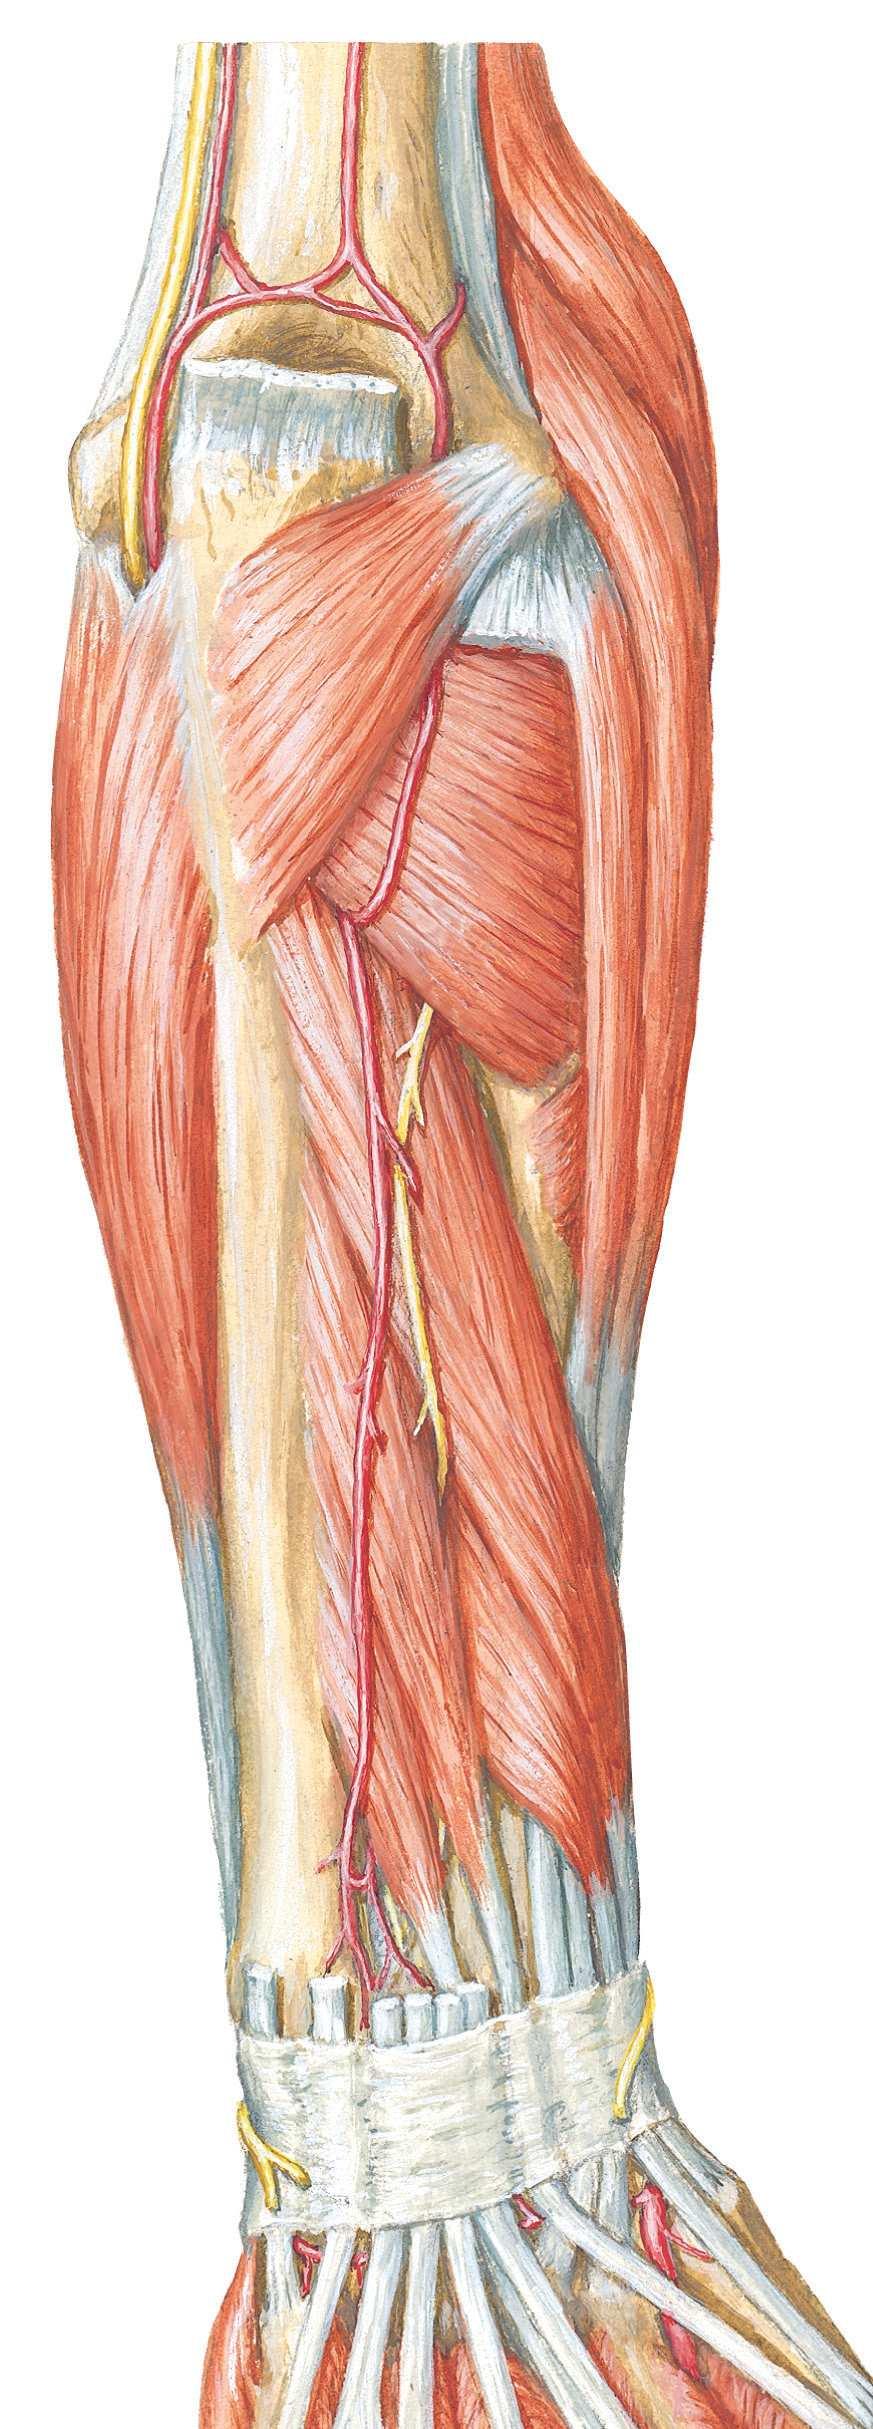 Muscles Anatomie Muscles Muscles antérieurs et postérieurs du bras Figure 10-5. Muscles de l'avant-bras : vue postérieure.